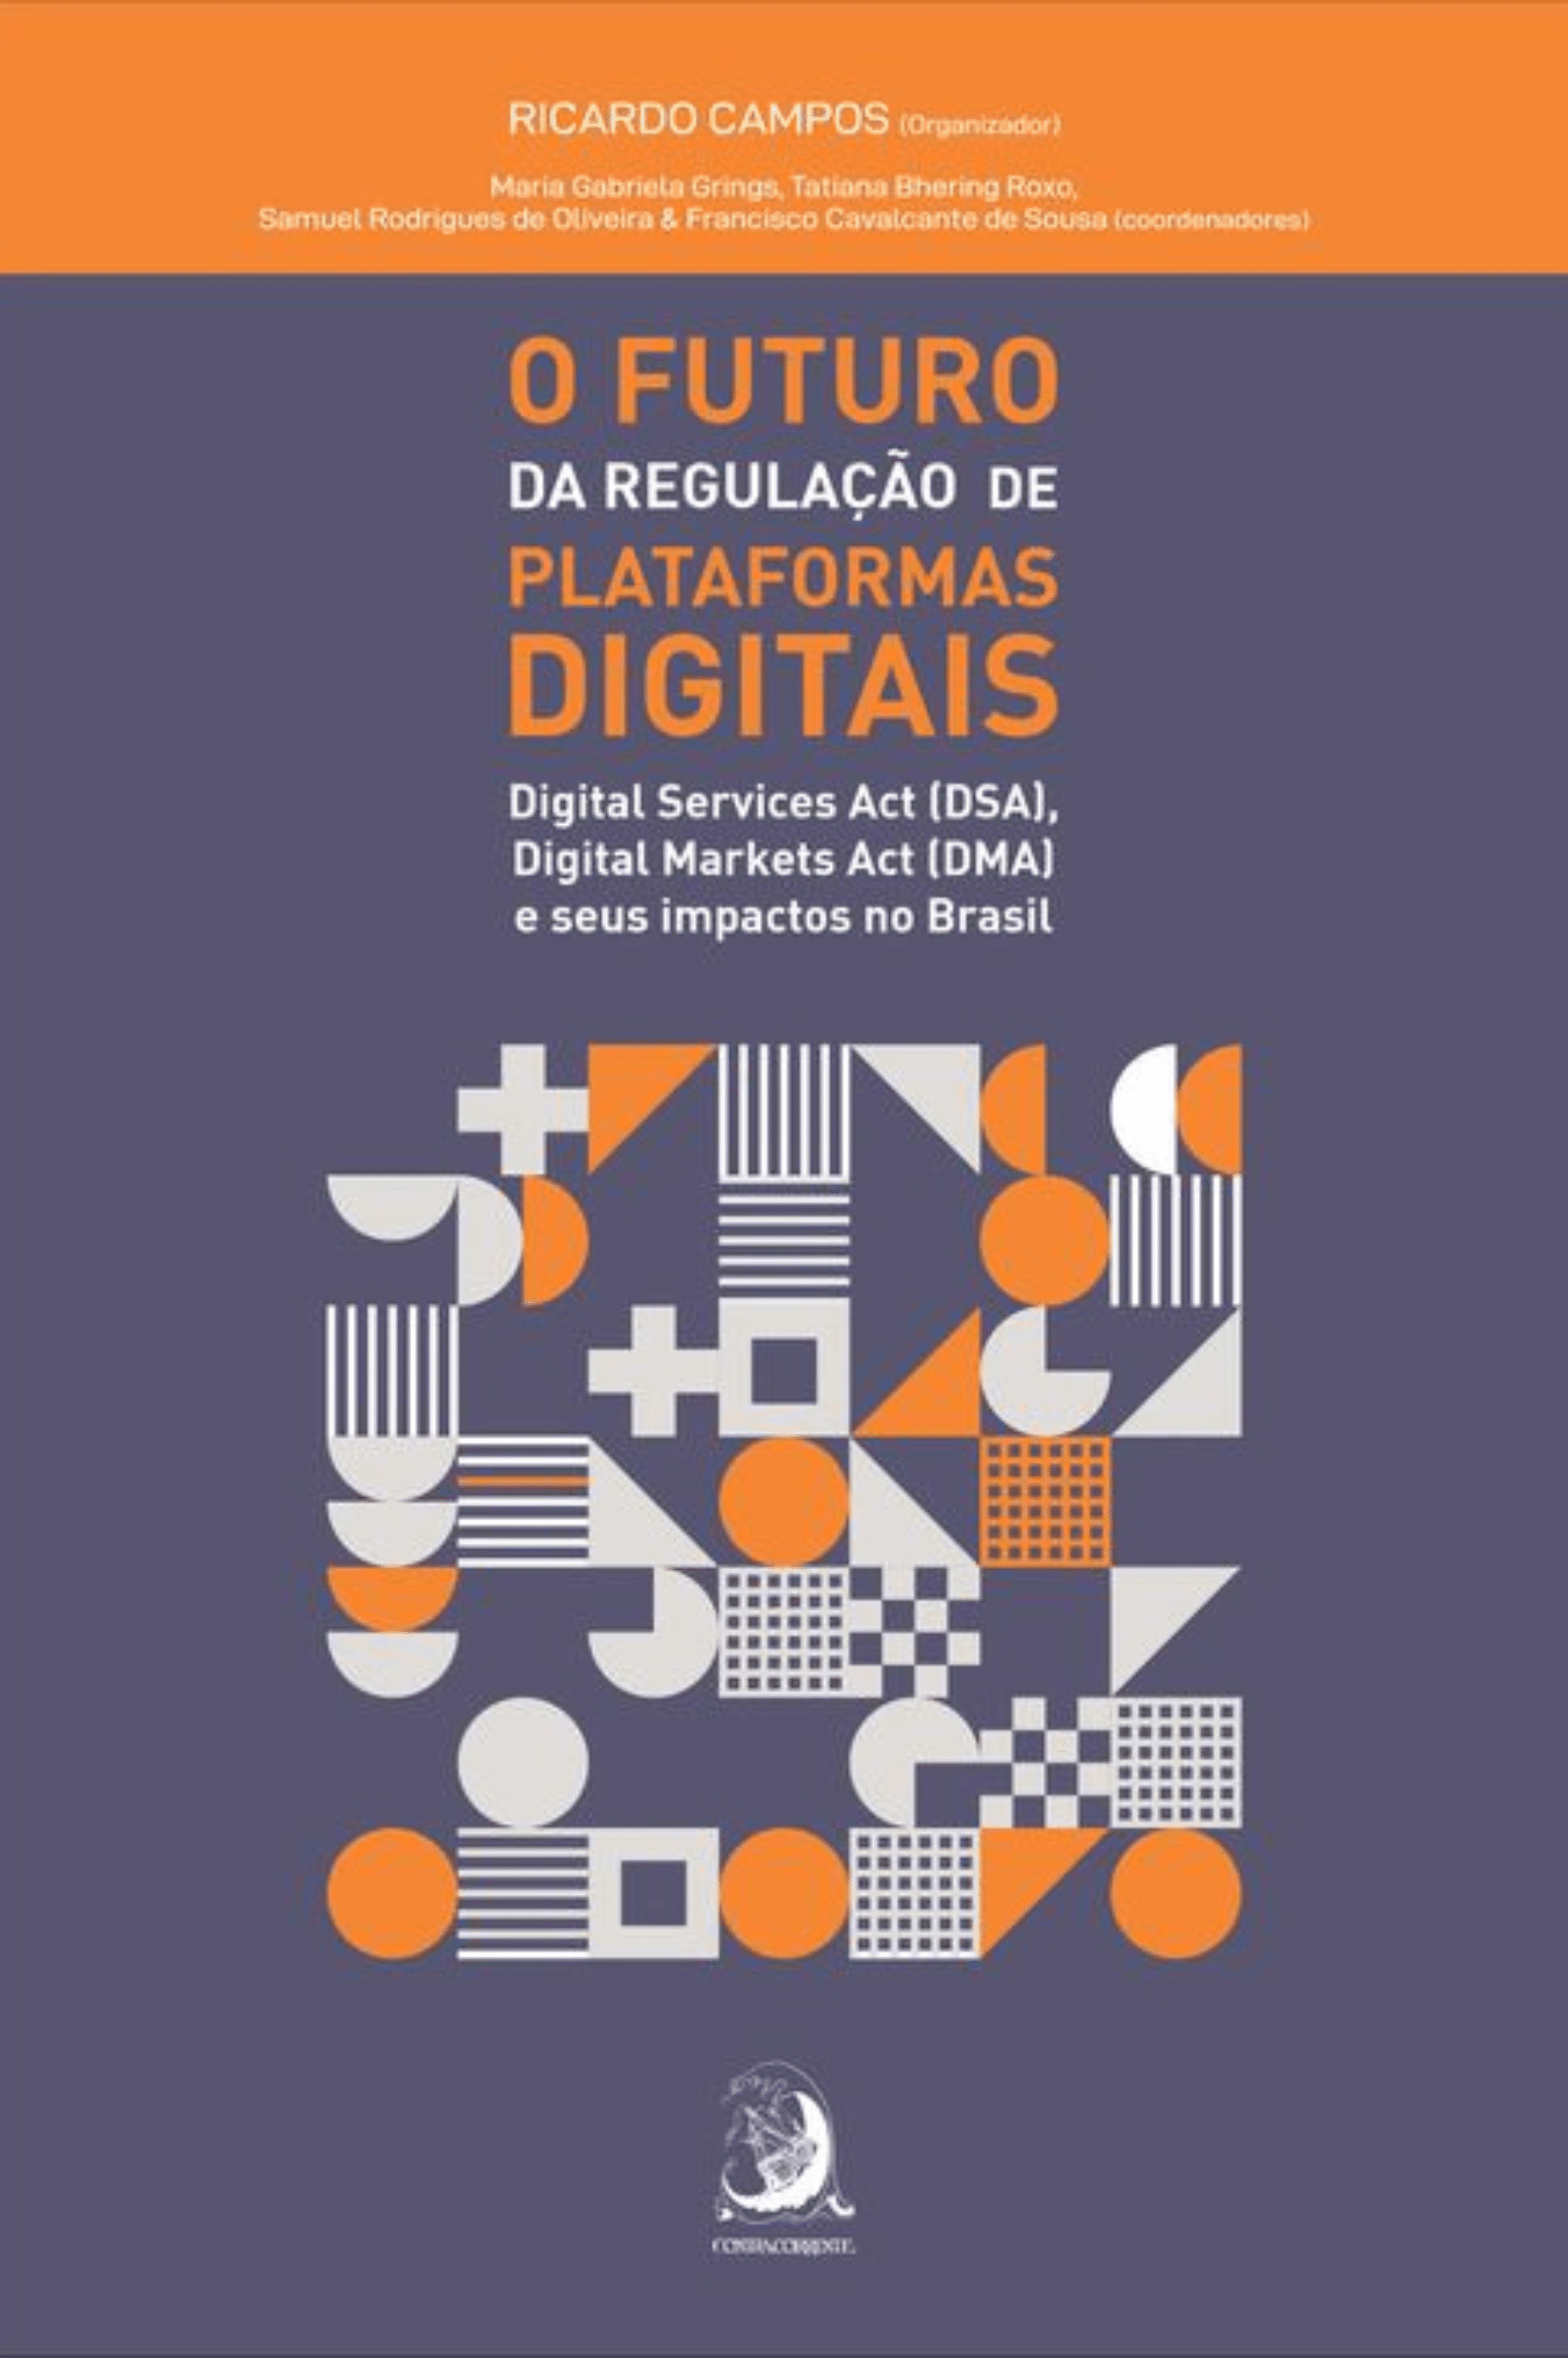 O Futuro da Regulação de Plataformas Digitais: Digital Services Act (DSA), Digital Markets Act (DMA) e Seus Impactos no Brasil - Descubra como a regulação de plataformas digitais, através do DSA e DMA, impacta o Brasil. Leitura essencial para entender o futuro da internet e da governança digital.